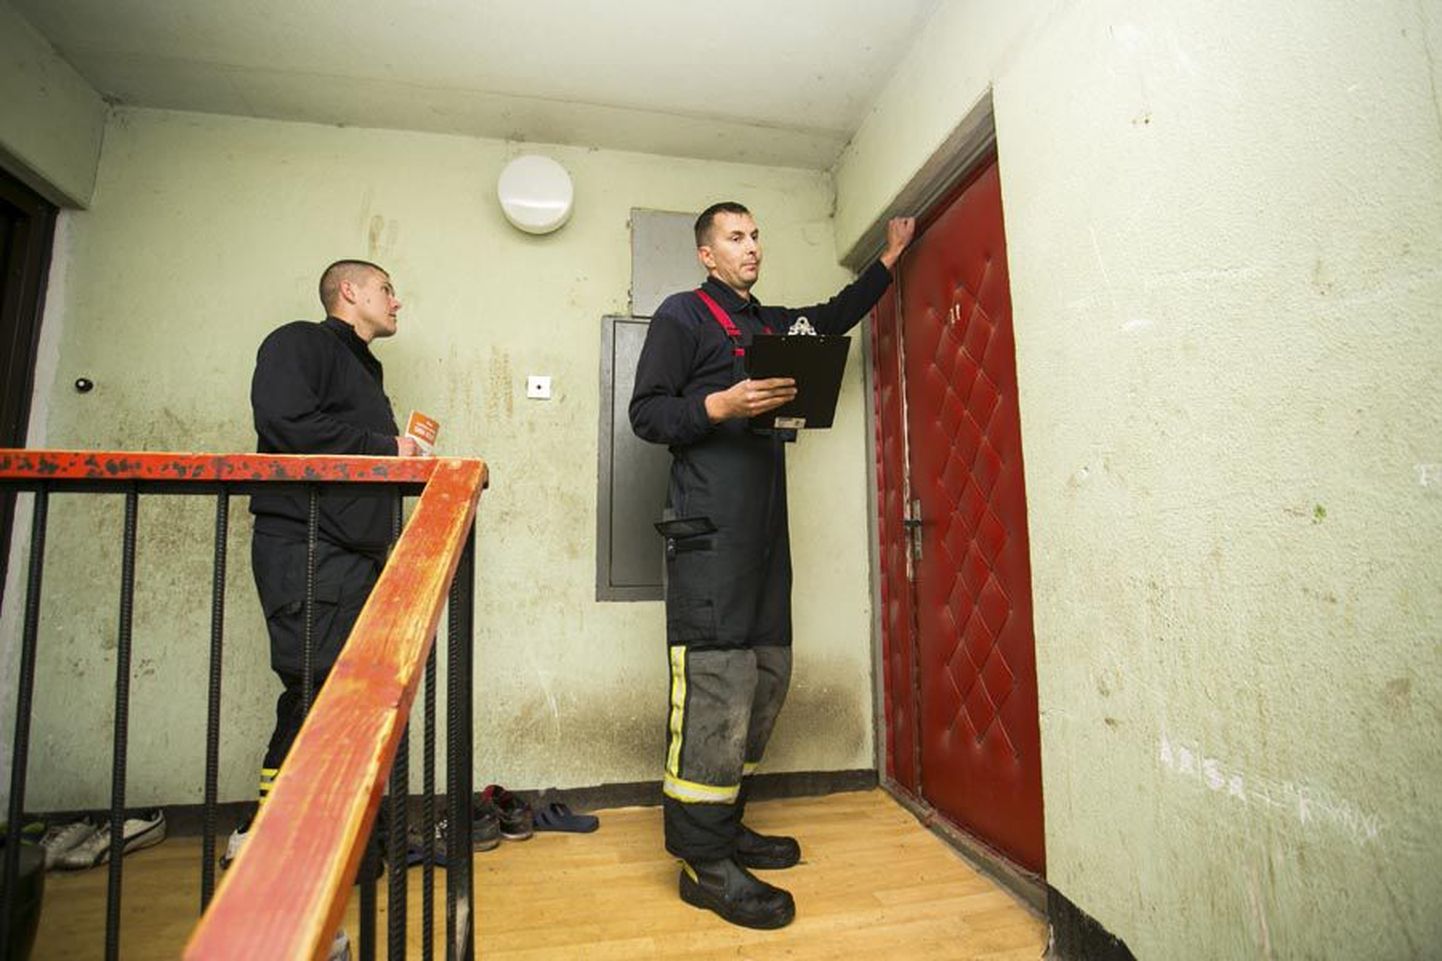 Päästeametnikud käivad külmade ilmade saabumise järel kodudes, kus kontrollivad suitsuandurite olemasolu ja küttekoldeid. Ukse taha tulnud tuletõrjujad maksab igal juhul tuppa lubada.